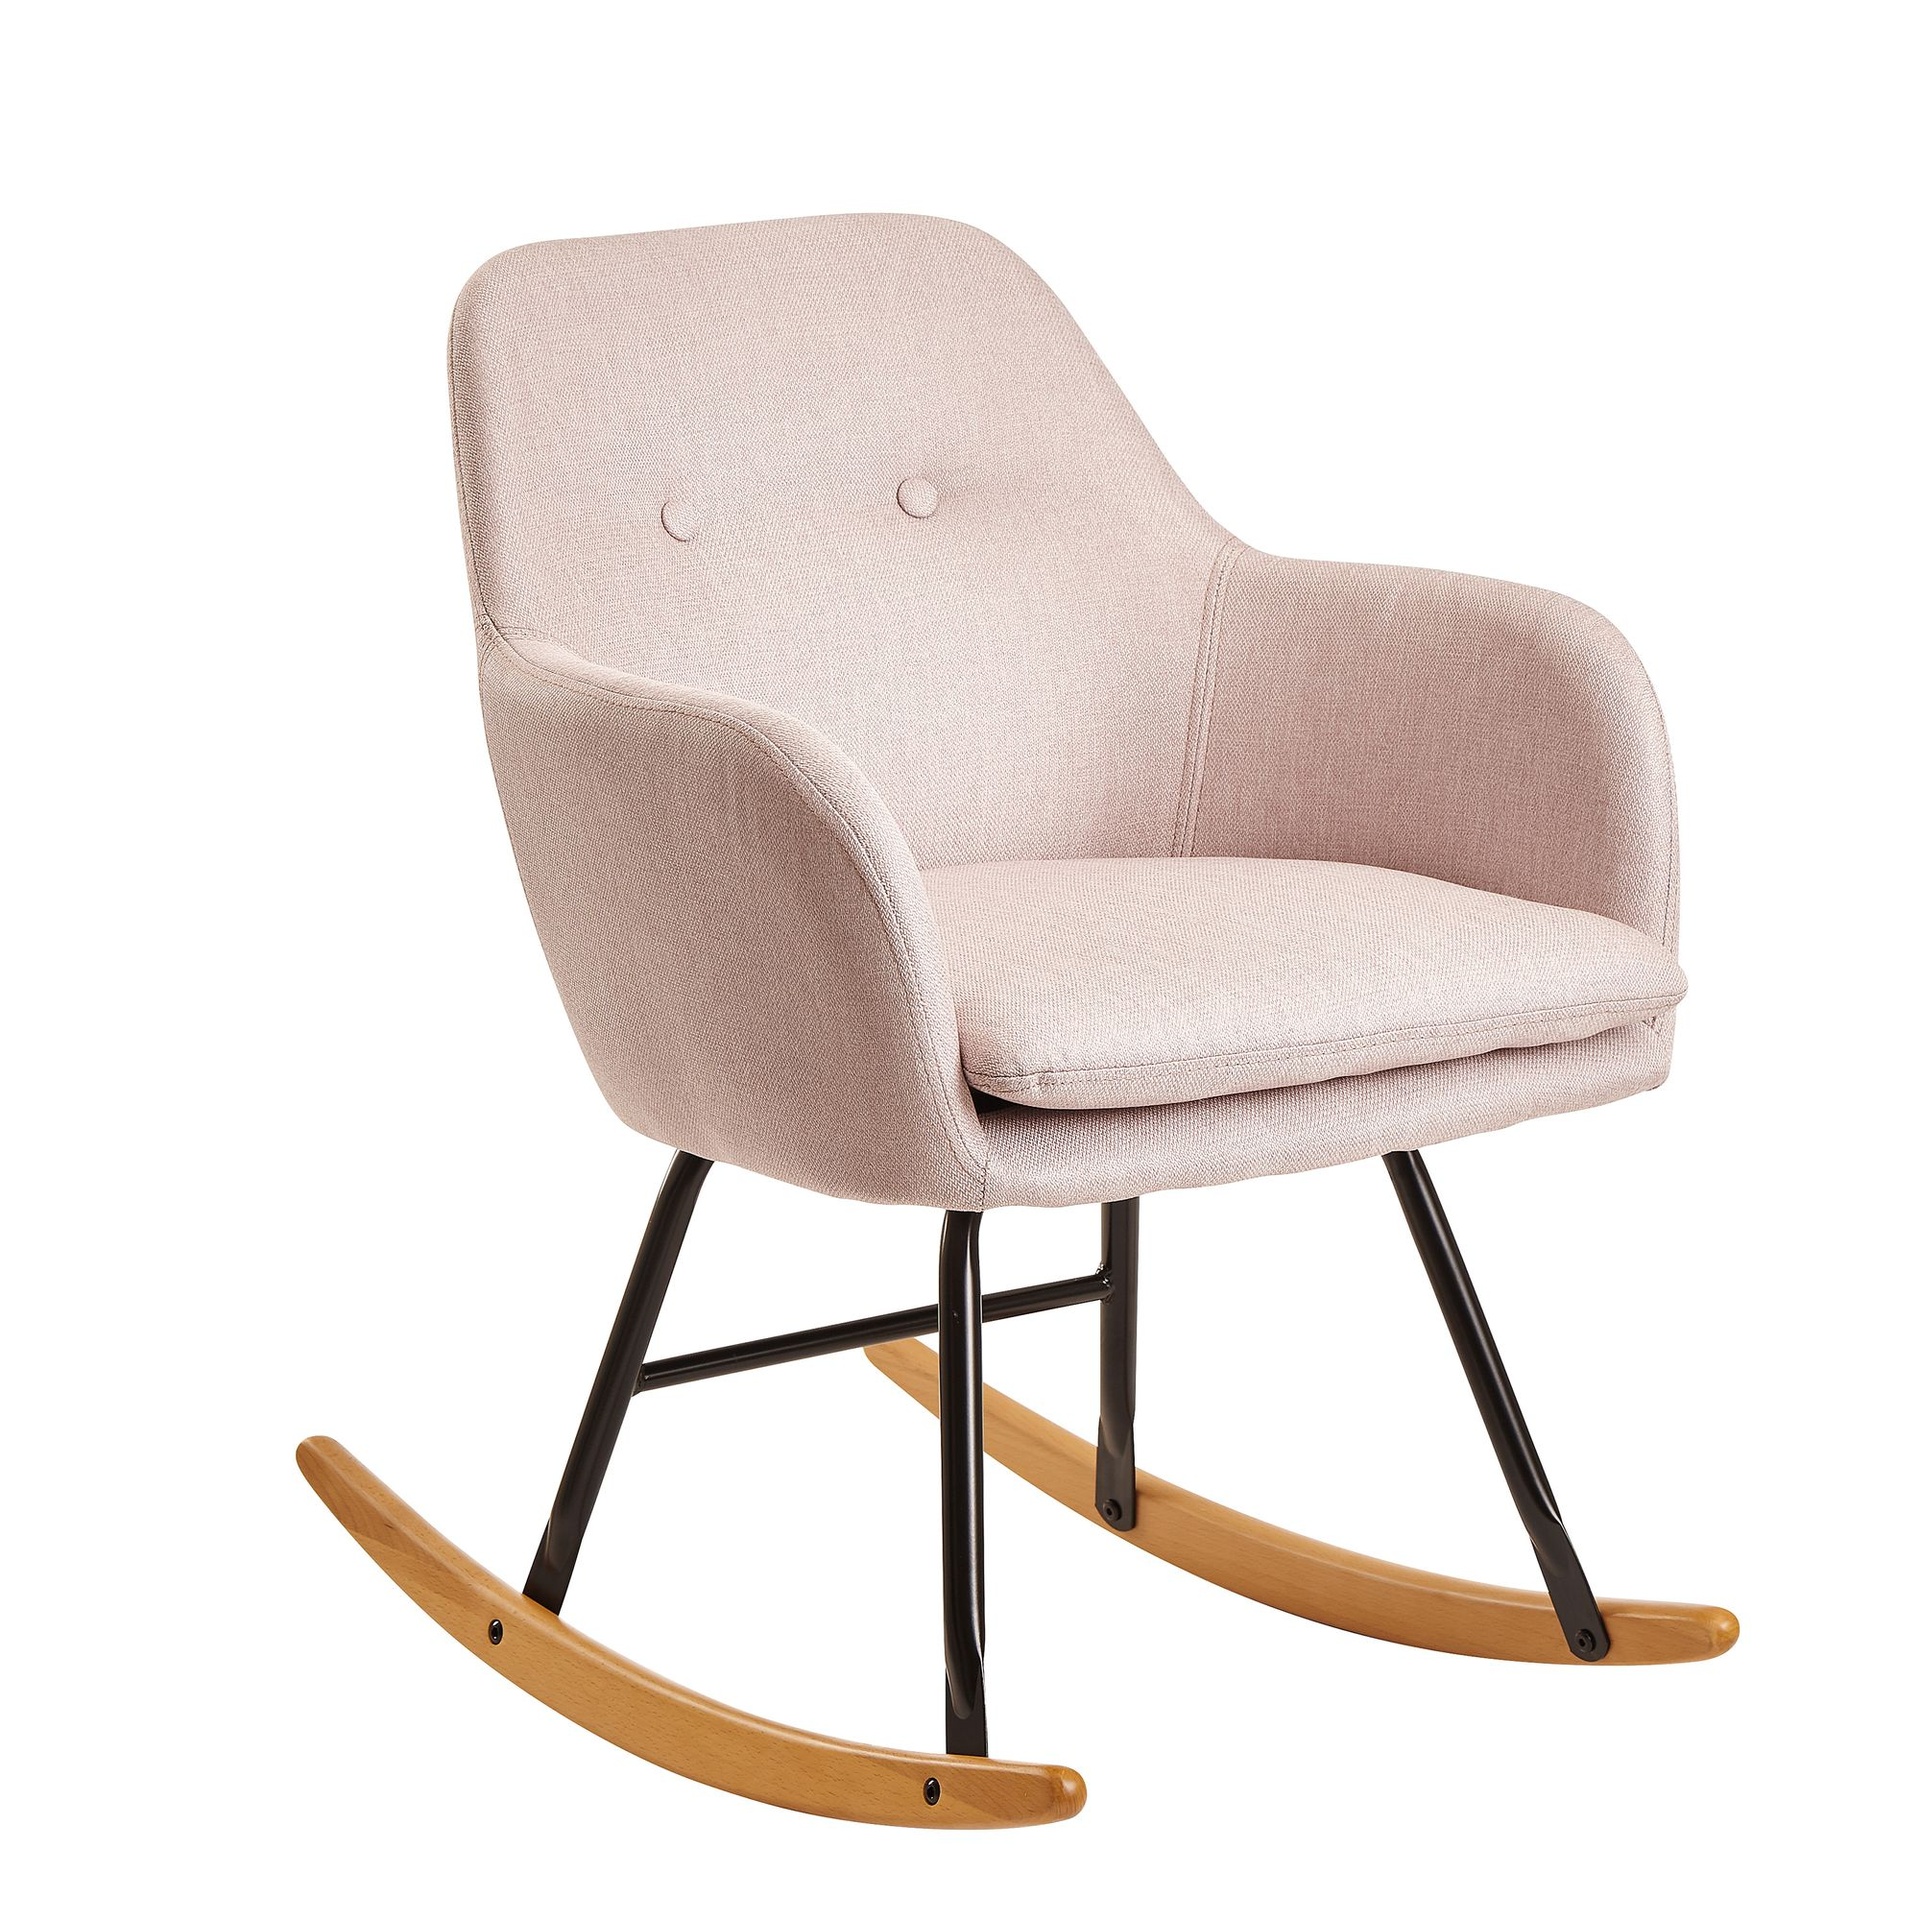 [A10058] Rocking chair rose 71x76x70cm design Malmo tissu / bois